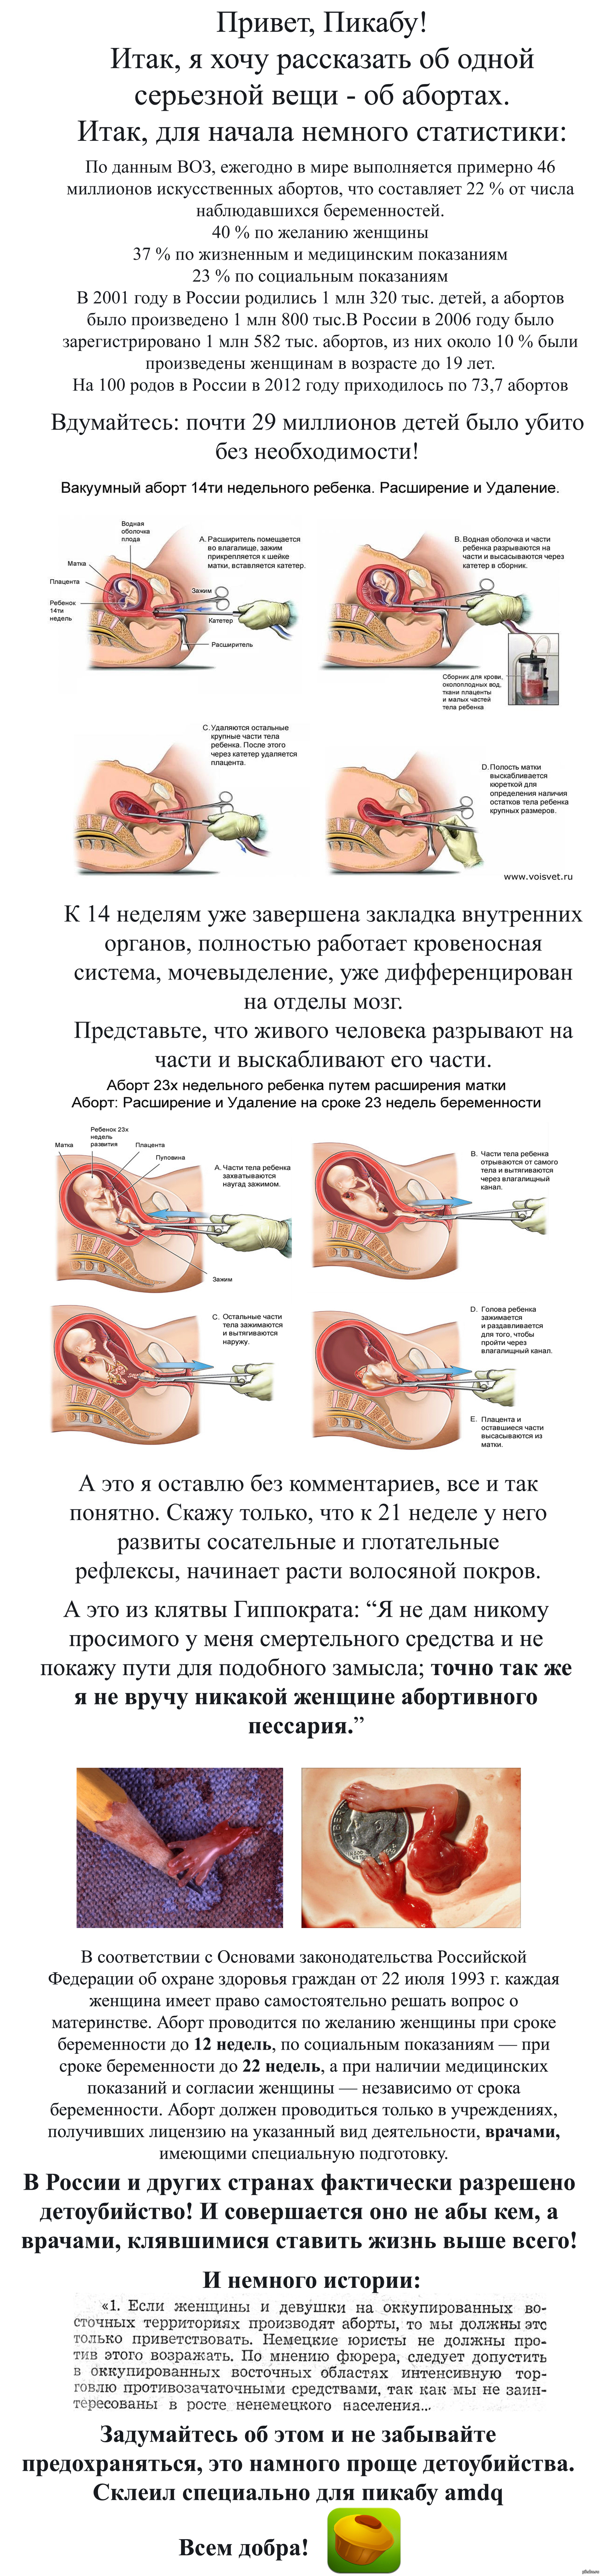 Беременность после аборта в Москве клиника «Гемостаз»